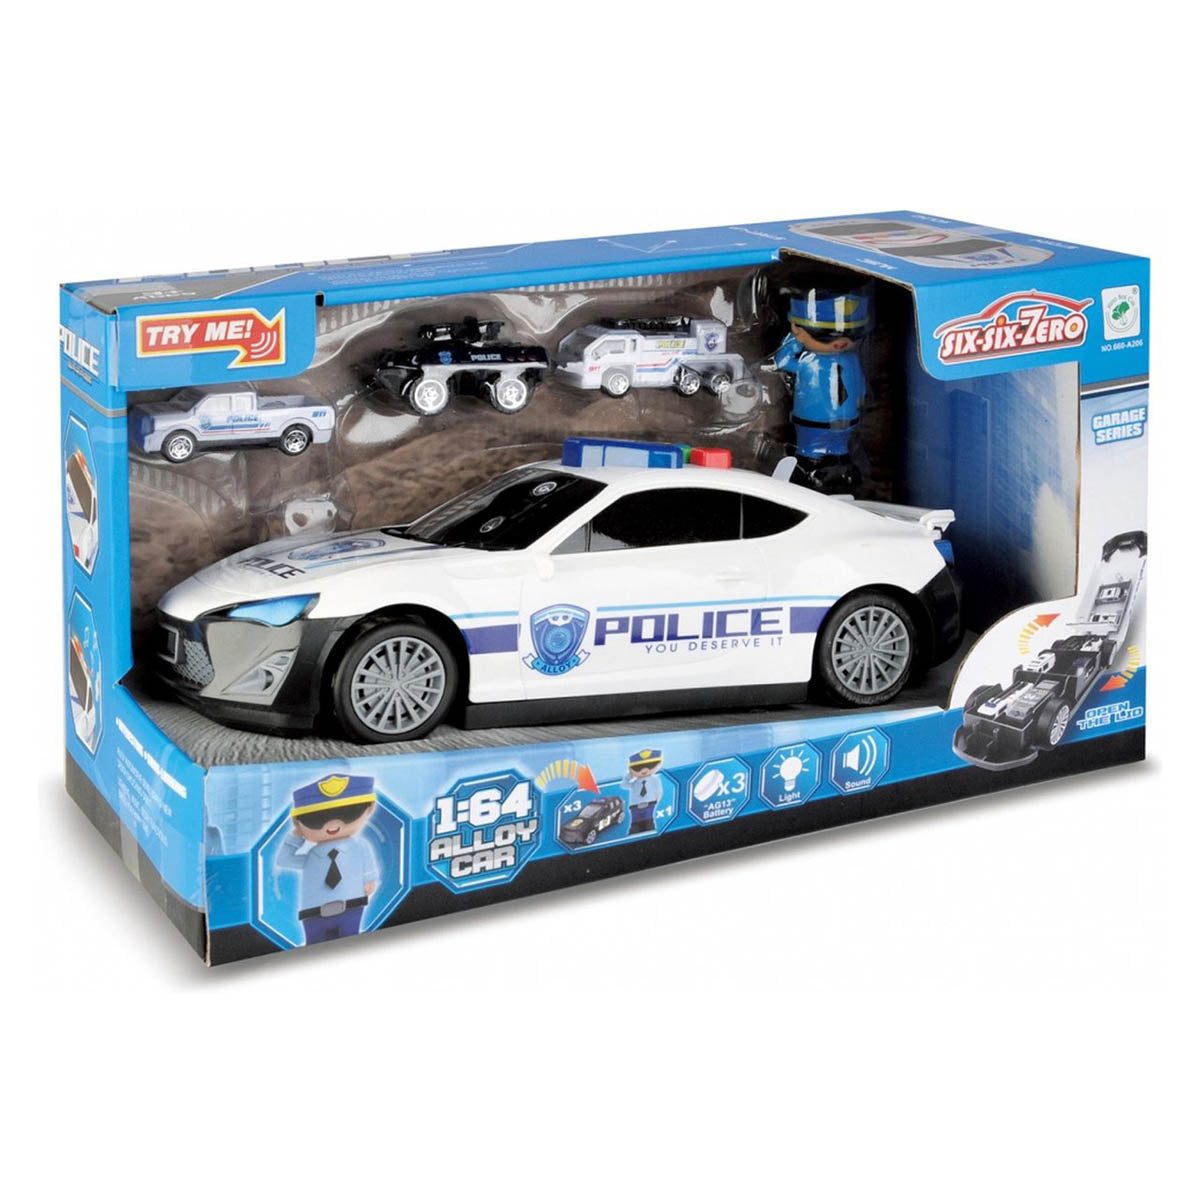 Ariko XL-Polizeiauto-Set - nicht weniger als 1:64 - 3 zusätzliche Autos - Staufächer im Auto - Polizist - mit Licht und Sound - inklusive Batterien